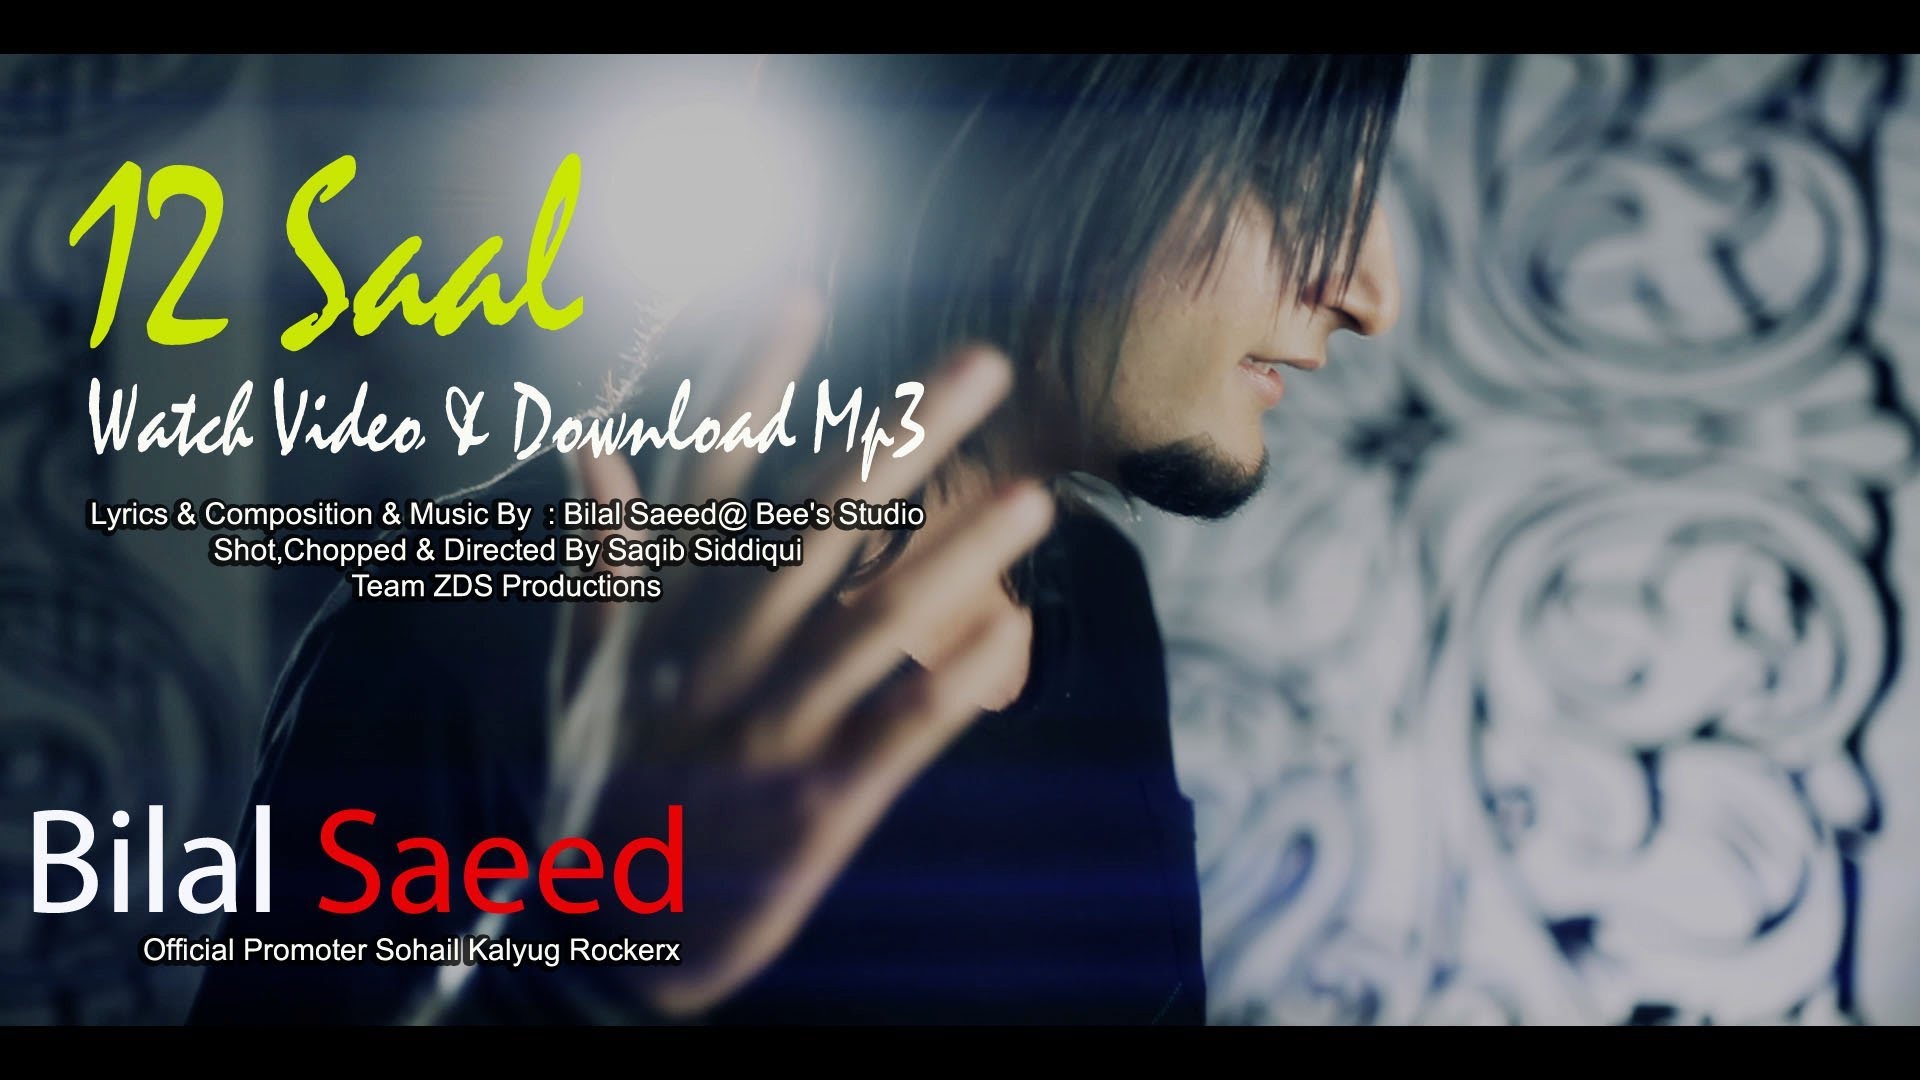 Bilal Saeed - 12 Saal DJ Shadow Dubai Remix - YouTube